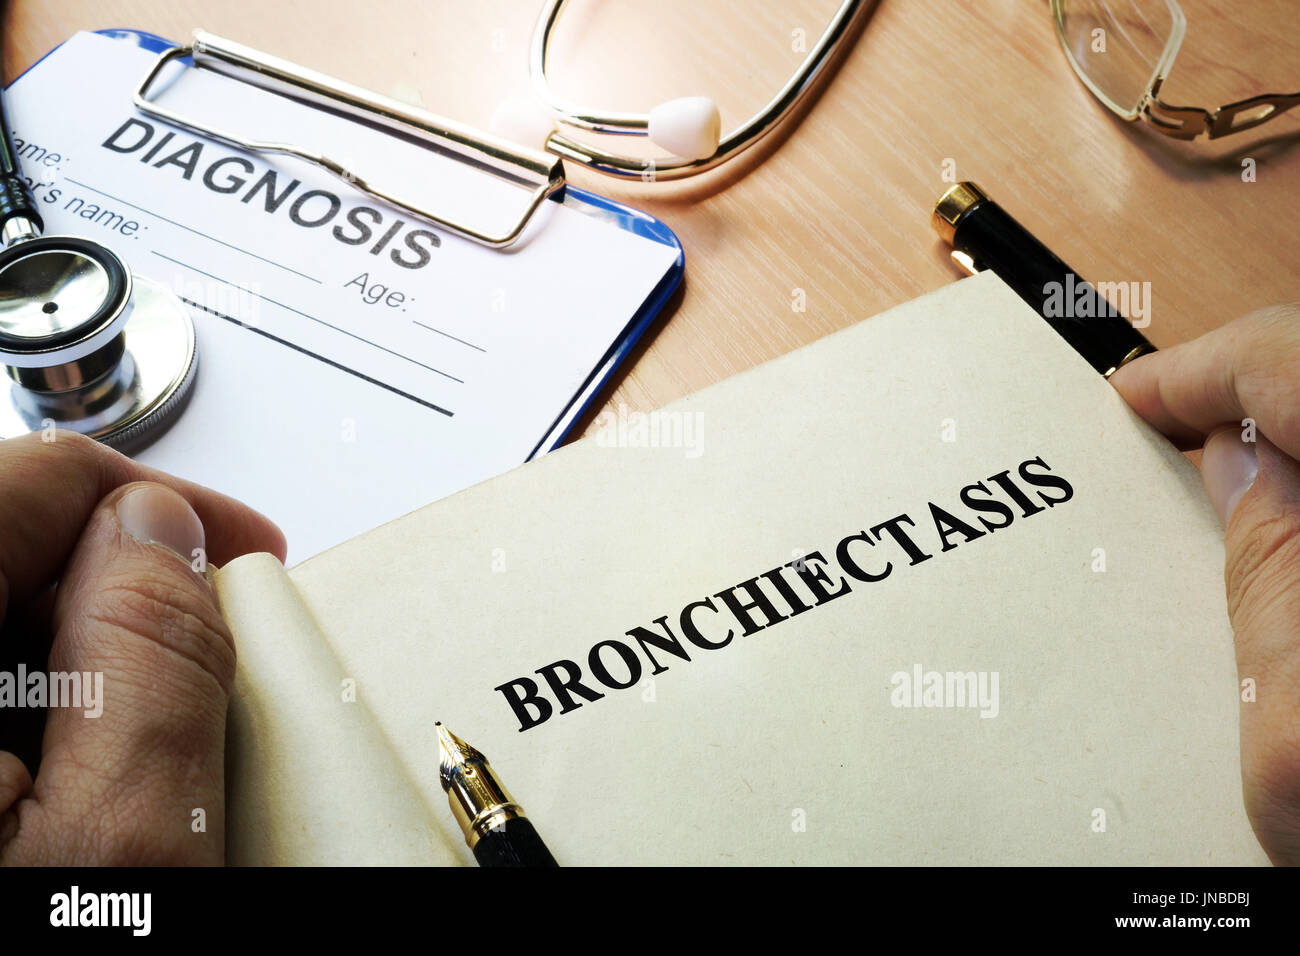 Prenota con titolo broncoectasia in una clinica. Foto Stock